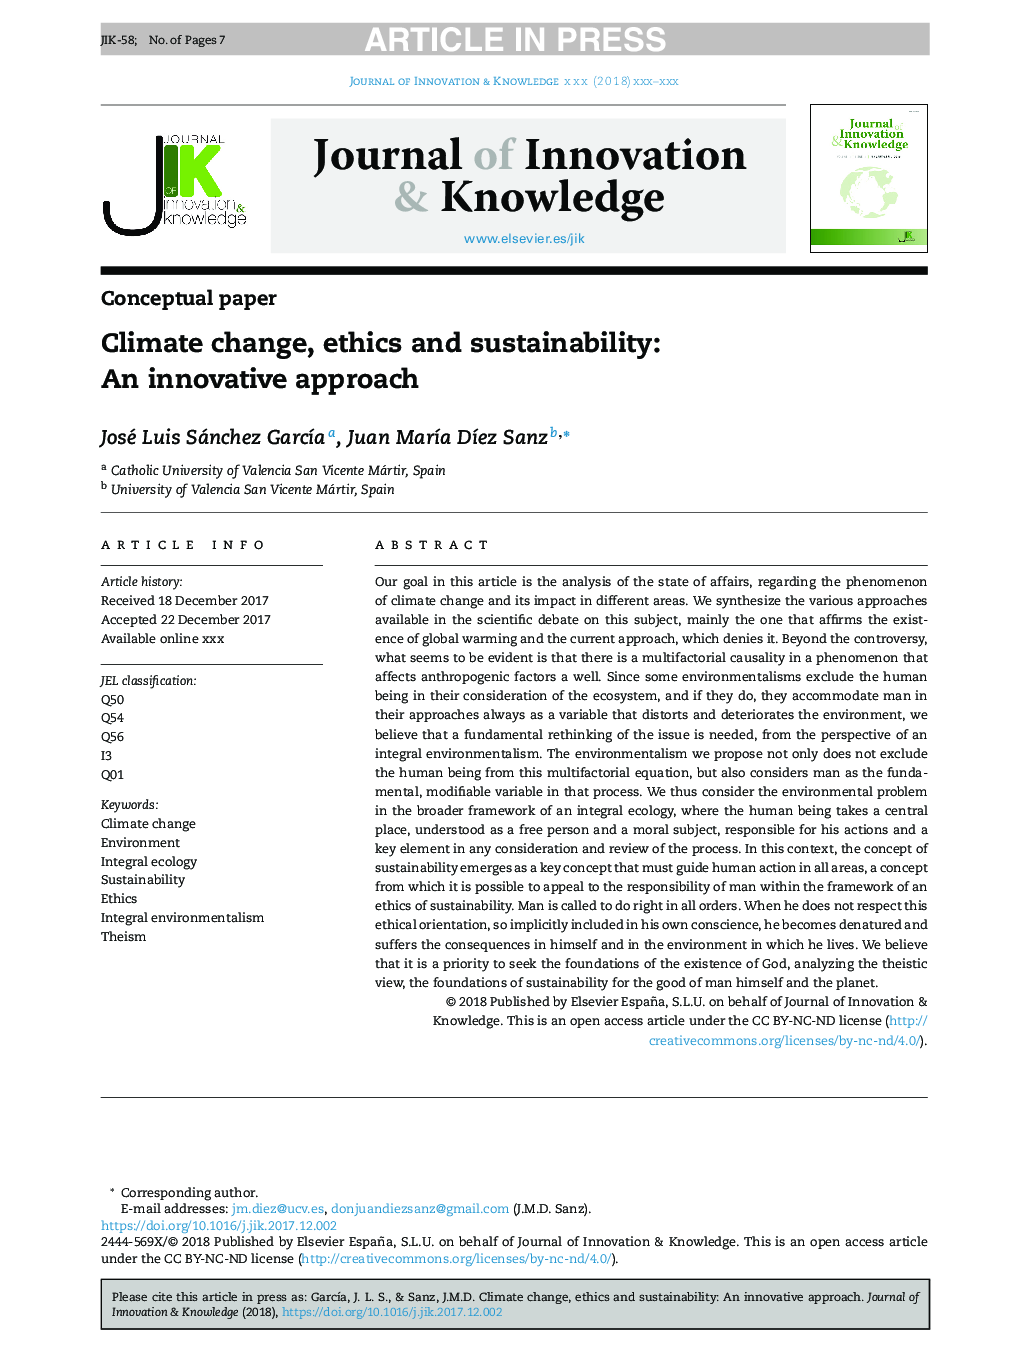 تغییرات اقلیمی، اخلاق و پایداری: رویکرد نوآورانه 